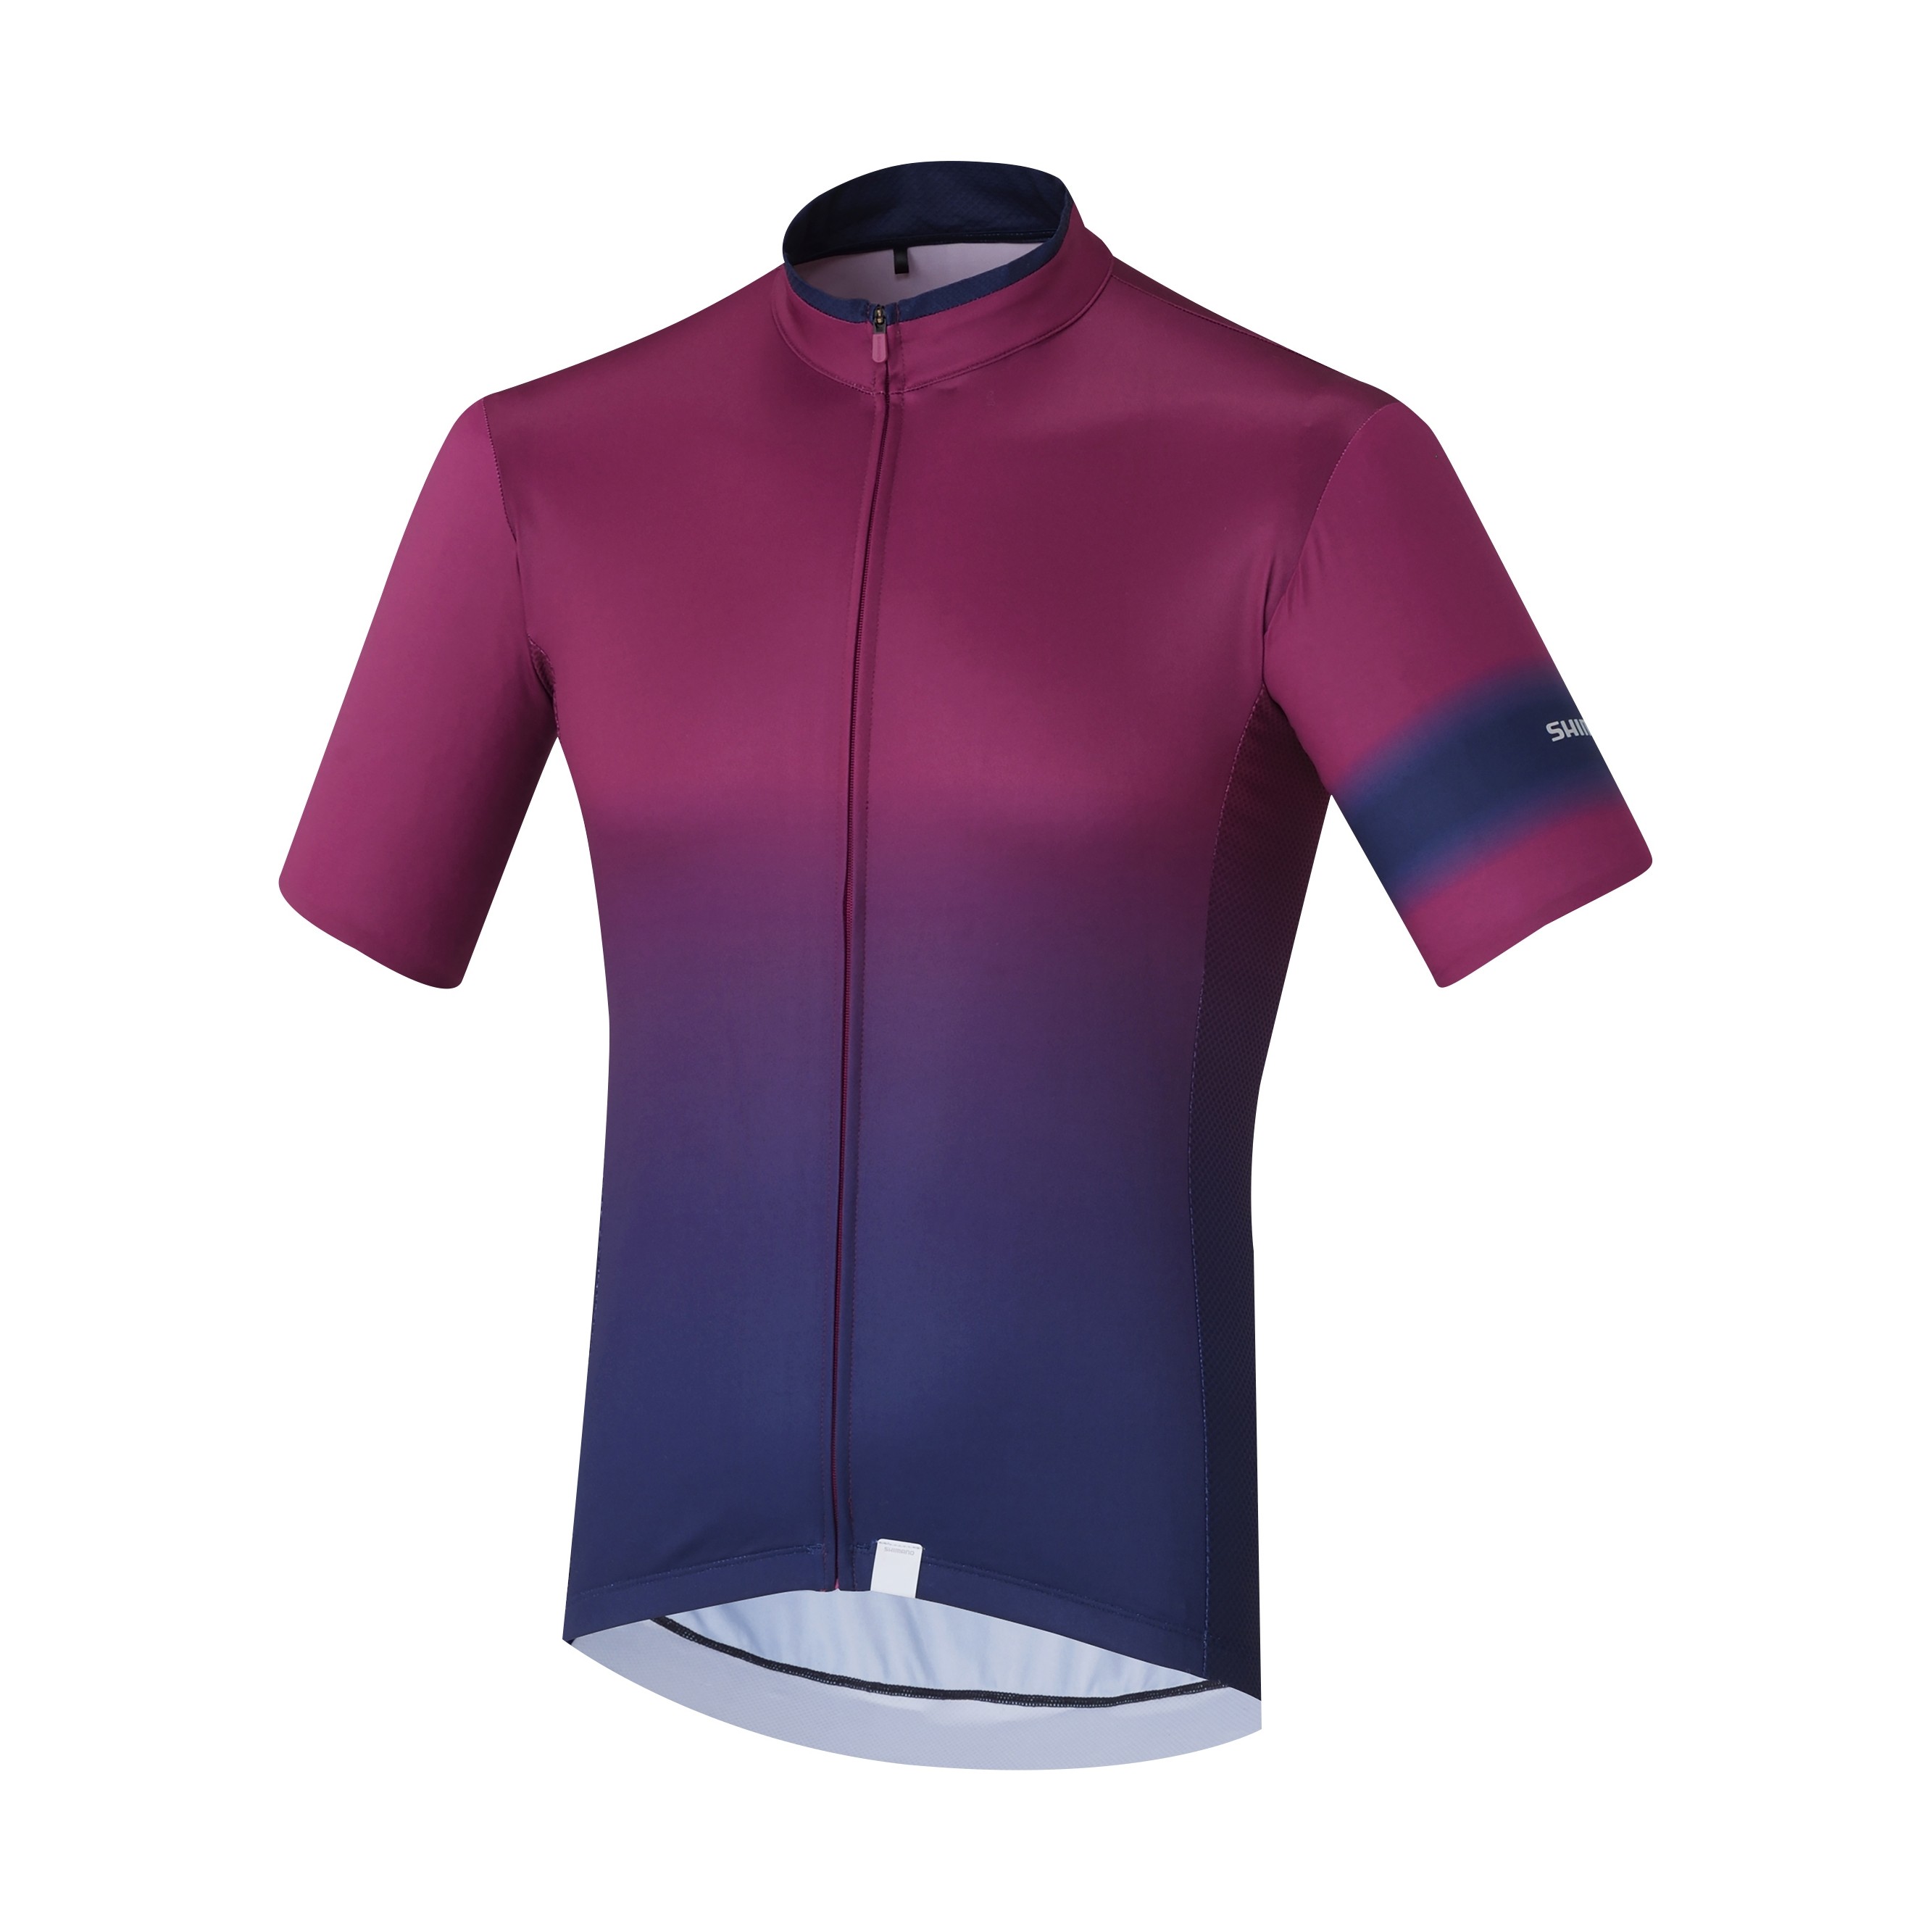 Shimano mirror cool maillot de cyclisme manches courtes violet